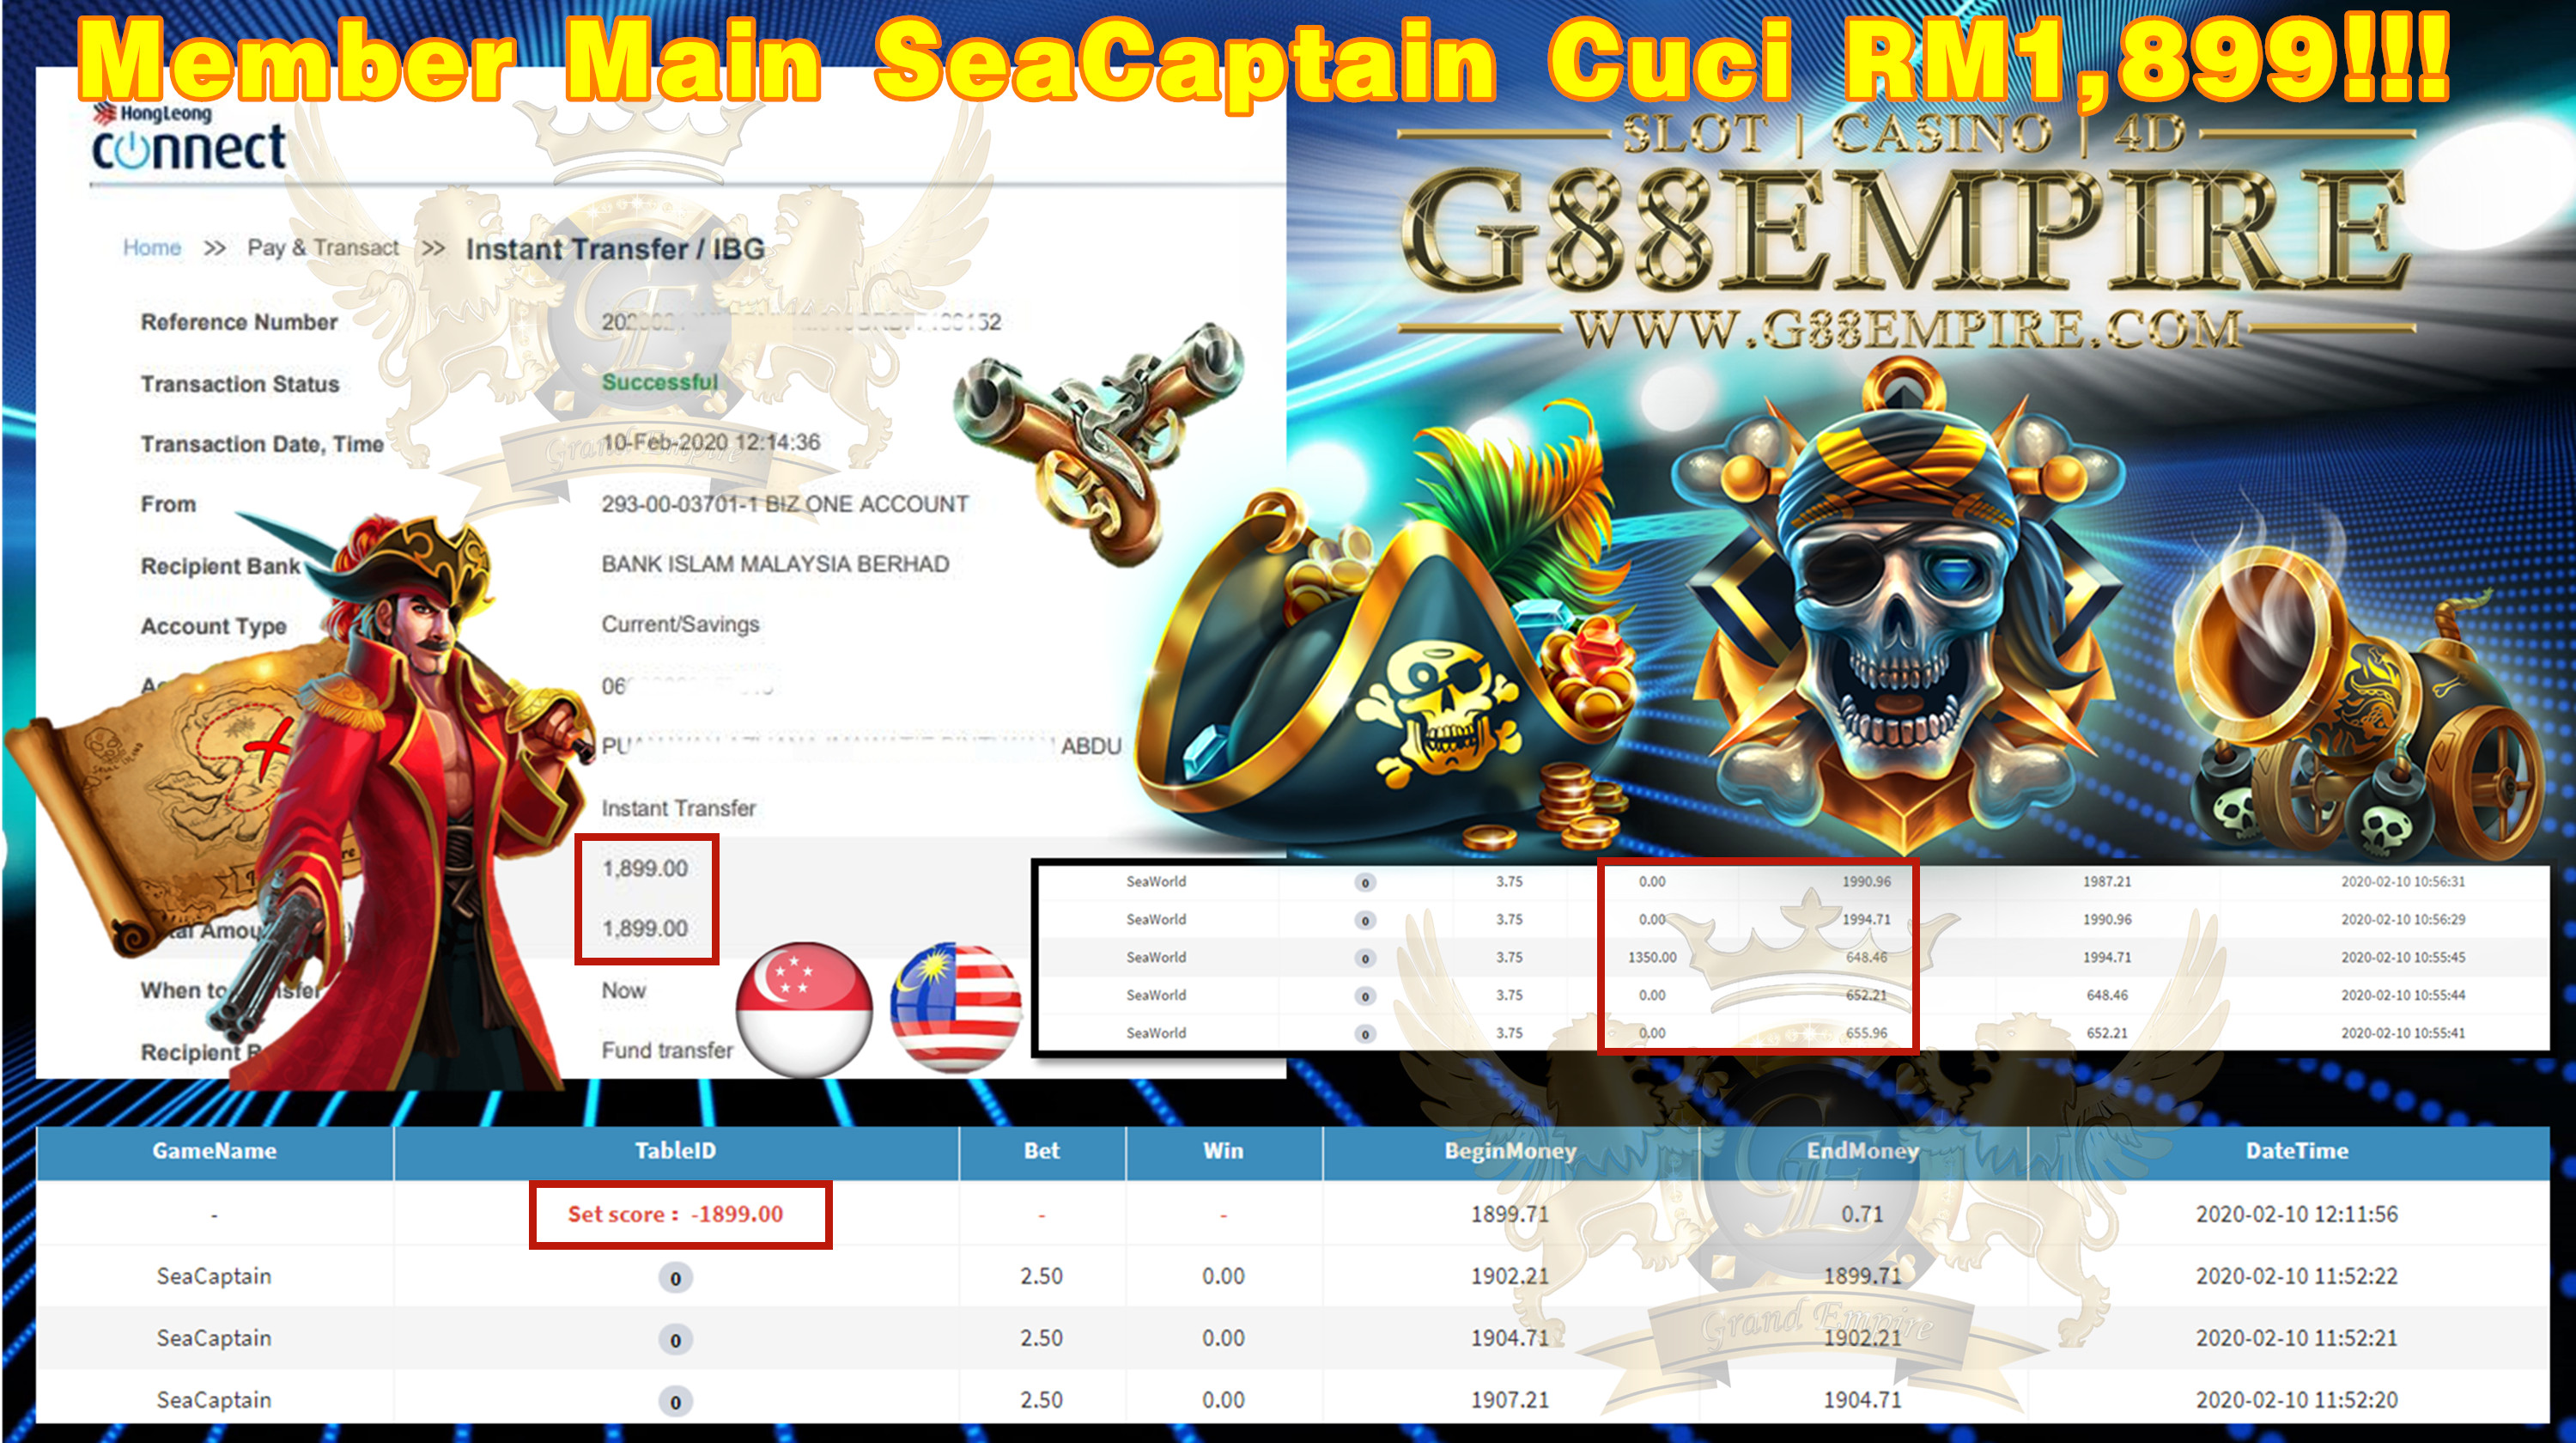 MEMBER MAIN SEA CAPTAIN CUCI RM1,899!!!